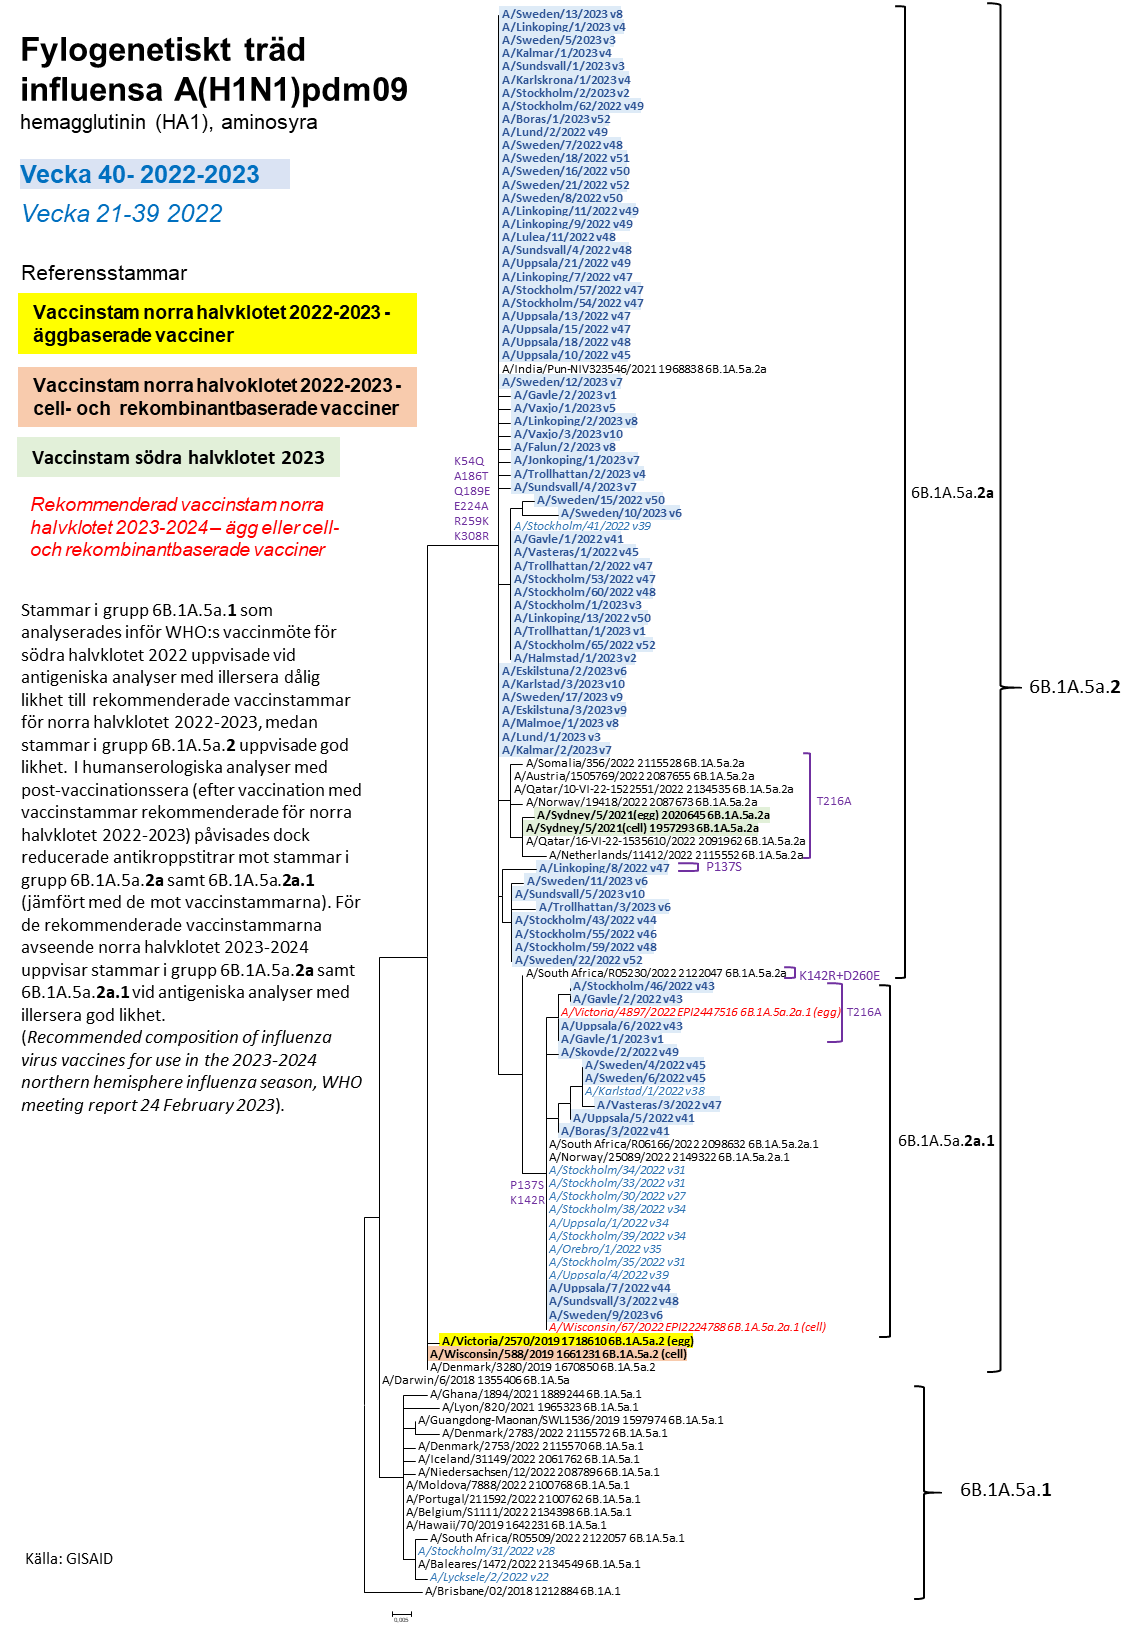 Fylogenetiskt träd för hemagglutinin för influensa A H1N1 som visar släktskapet för svenska influensastammar. Texten sammanfattar detta. 